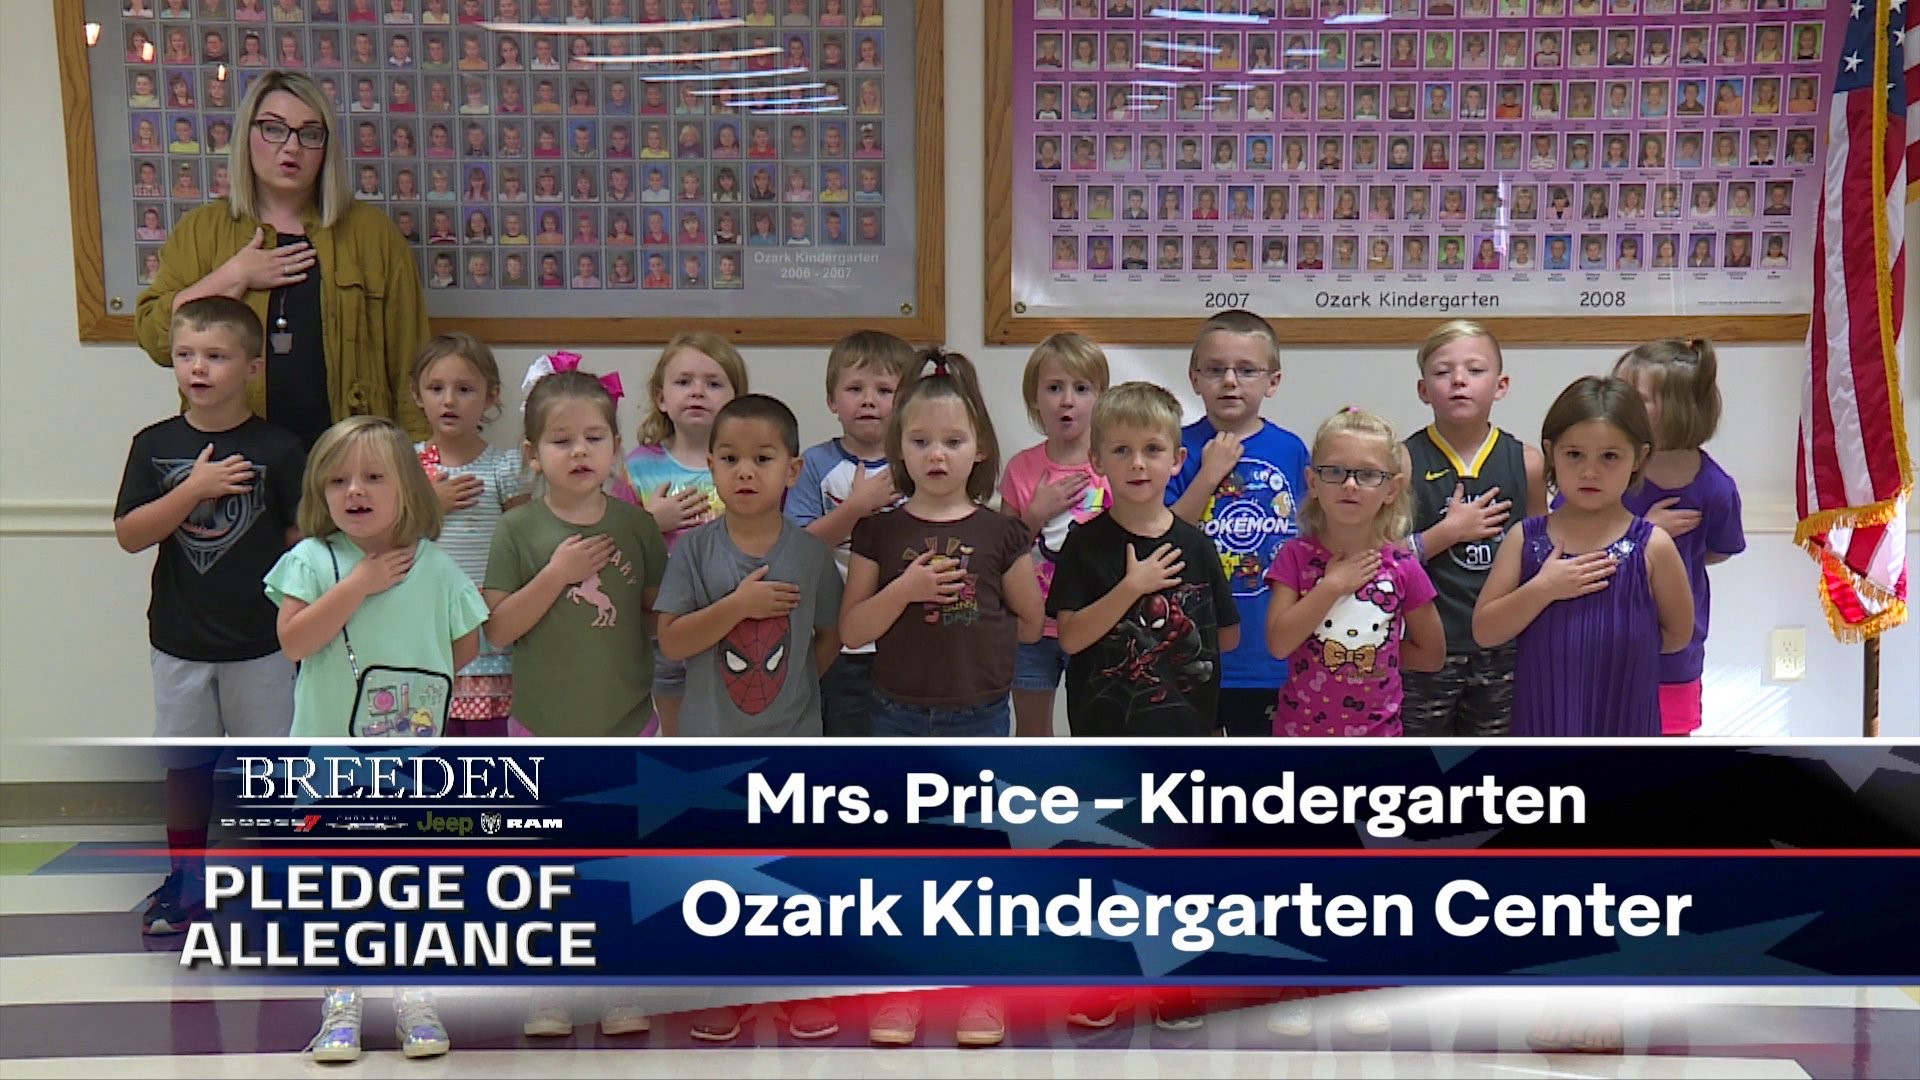 Mrs. Price -Kindergarten Ozark Kindergarten Center